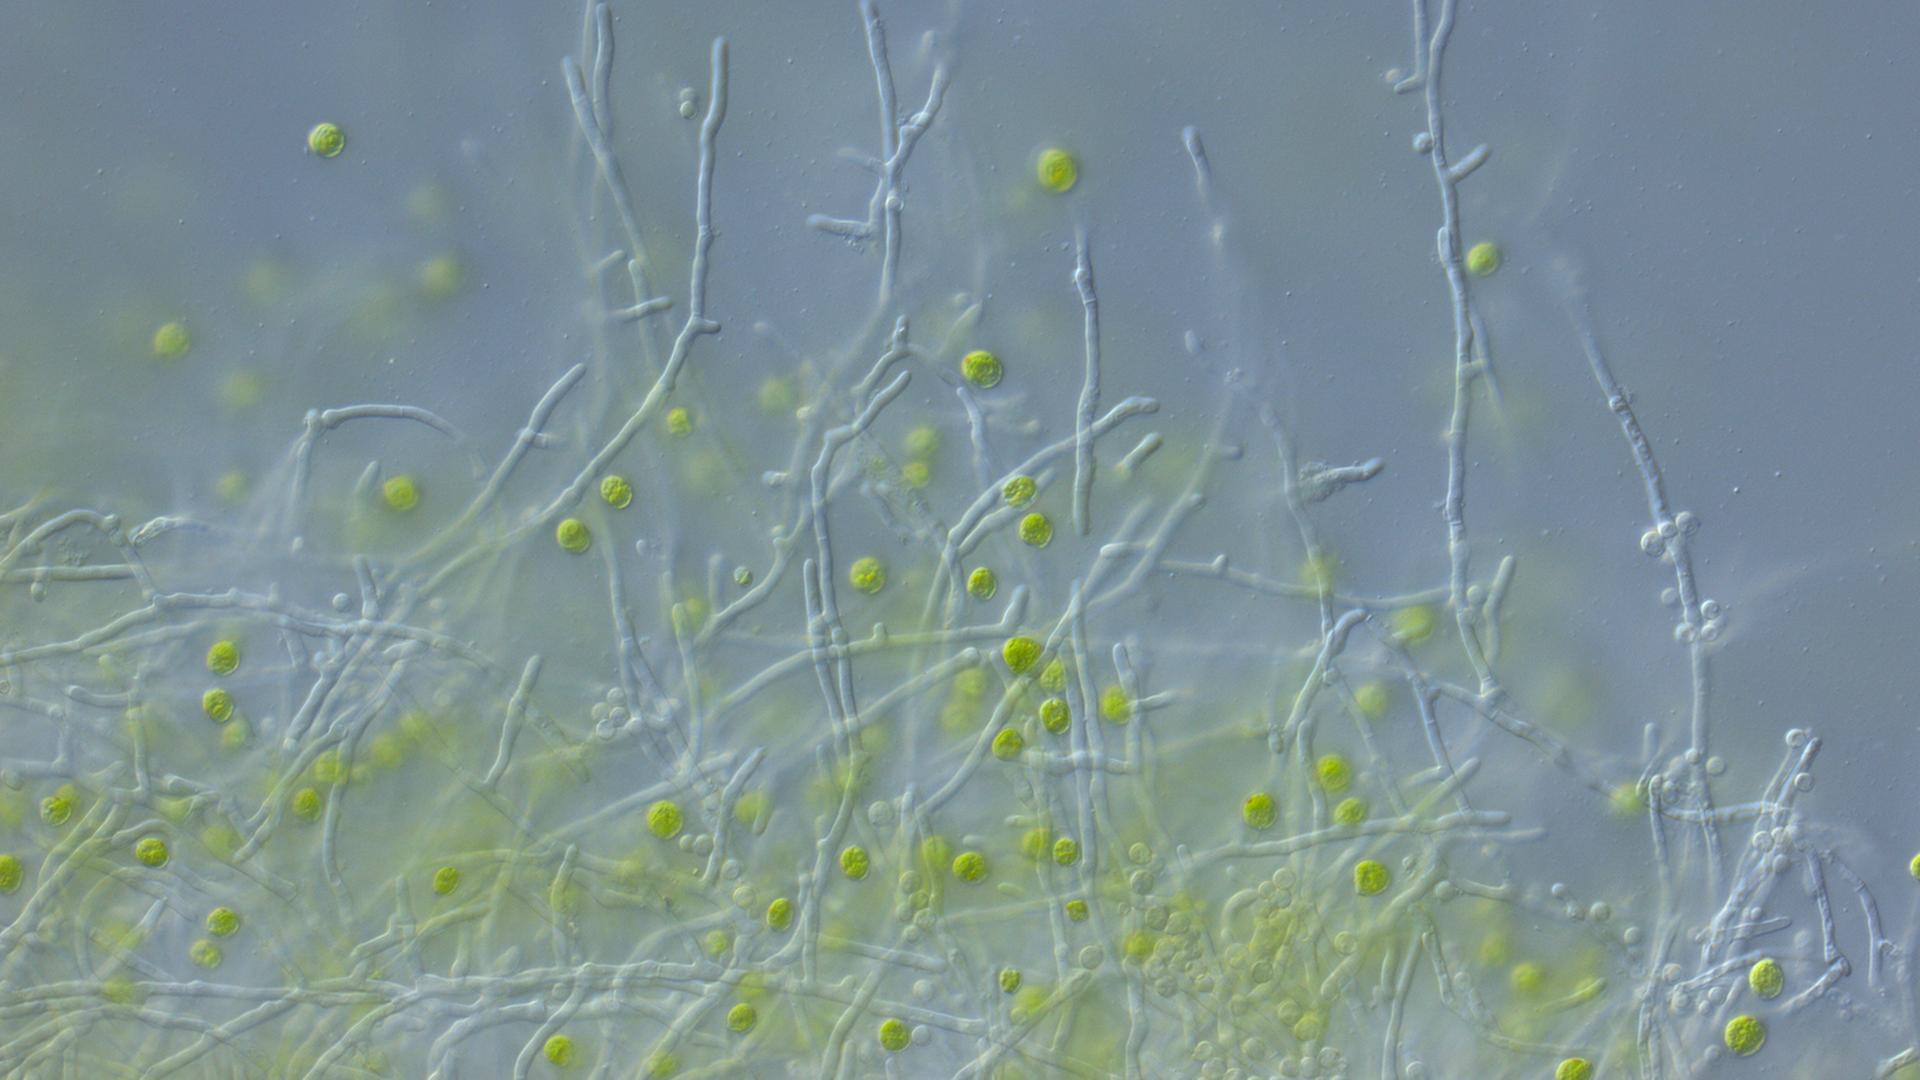 Die Mikroskopaufnahme zeigt die Grünalge Chlamydomonas reinhardtii (grün) und den Pilz Aspergillus nidulans (fadenförmig). Die Alge schützt sich mit einem vom Pilz gebildeten Wirkstoff vor schädlichen Bakterien-Wirkstoffen.